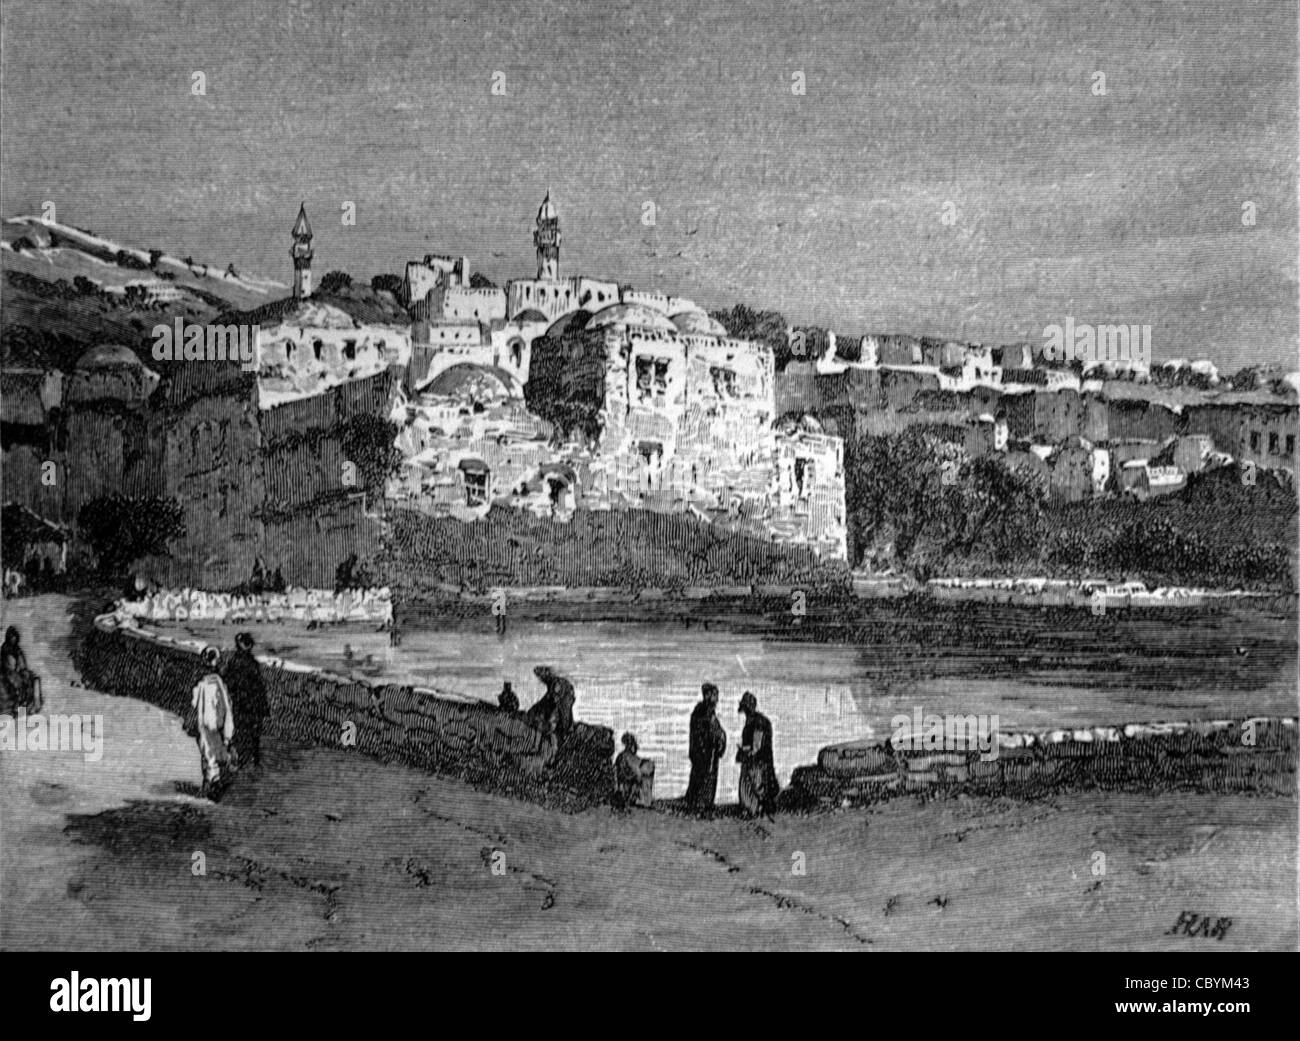 La grande piscine ou la piscine sacrée à Hébron en Cisjordanie Palestine, c19th gravure ou illustration ancienne Banque D'Images